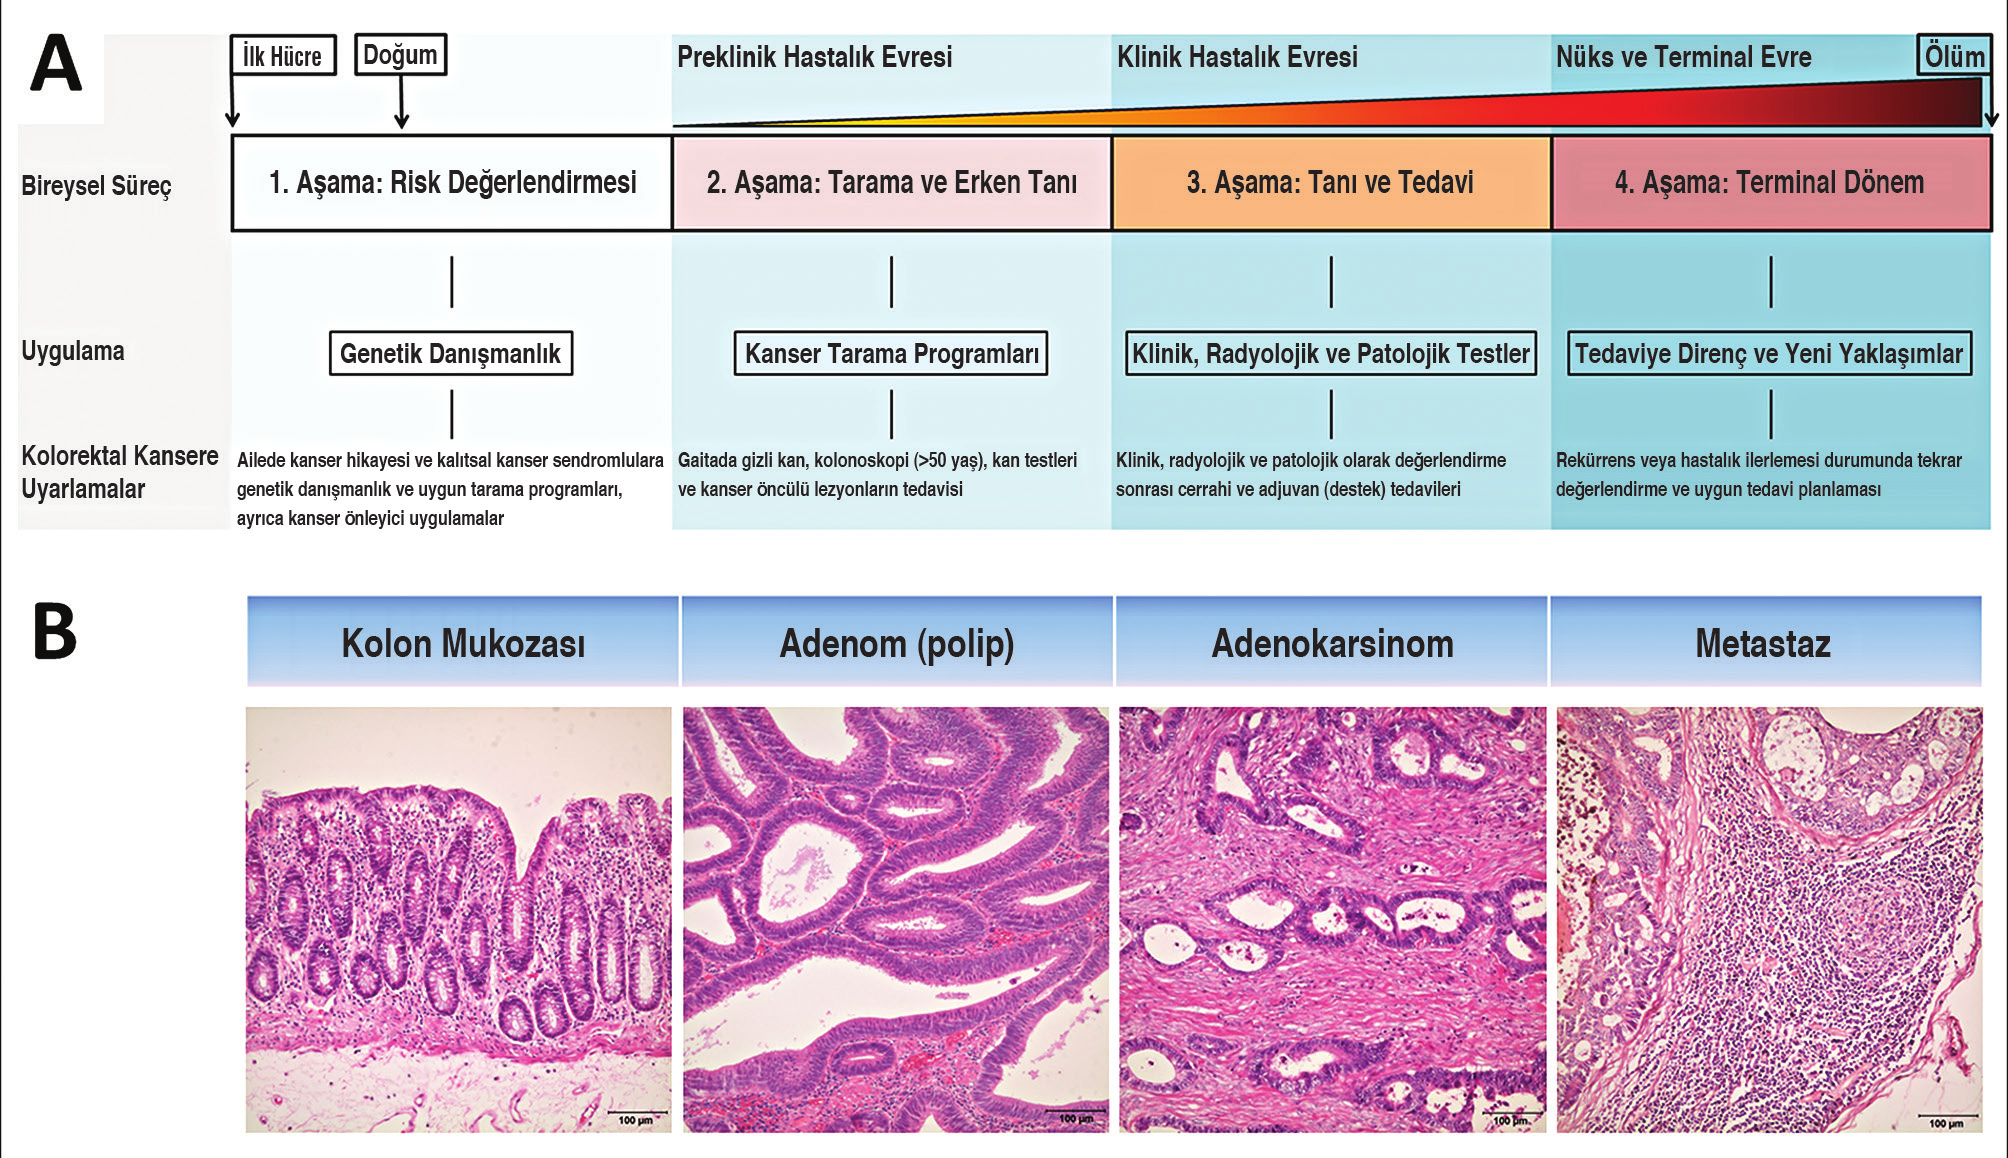 Resim 3. A. Birey odaklı yaşamsal süreç, tıbbi uygulamalar ve kolorektal kansere uyarlamalar. B. Normal kolon mukozasından adenom-karsinom gelişimi ve lenf nodu metastazı.